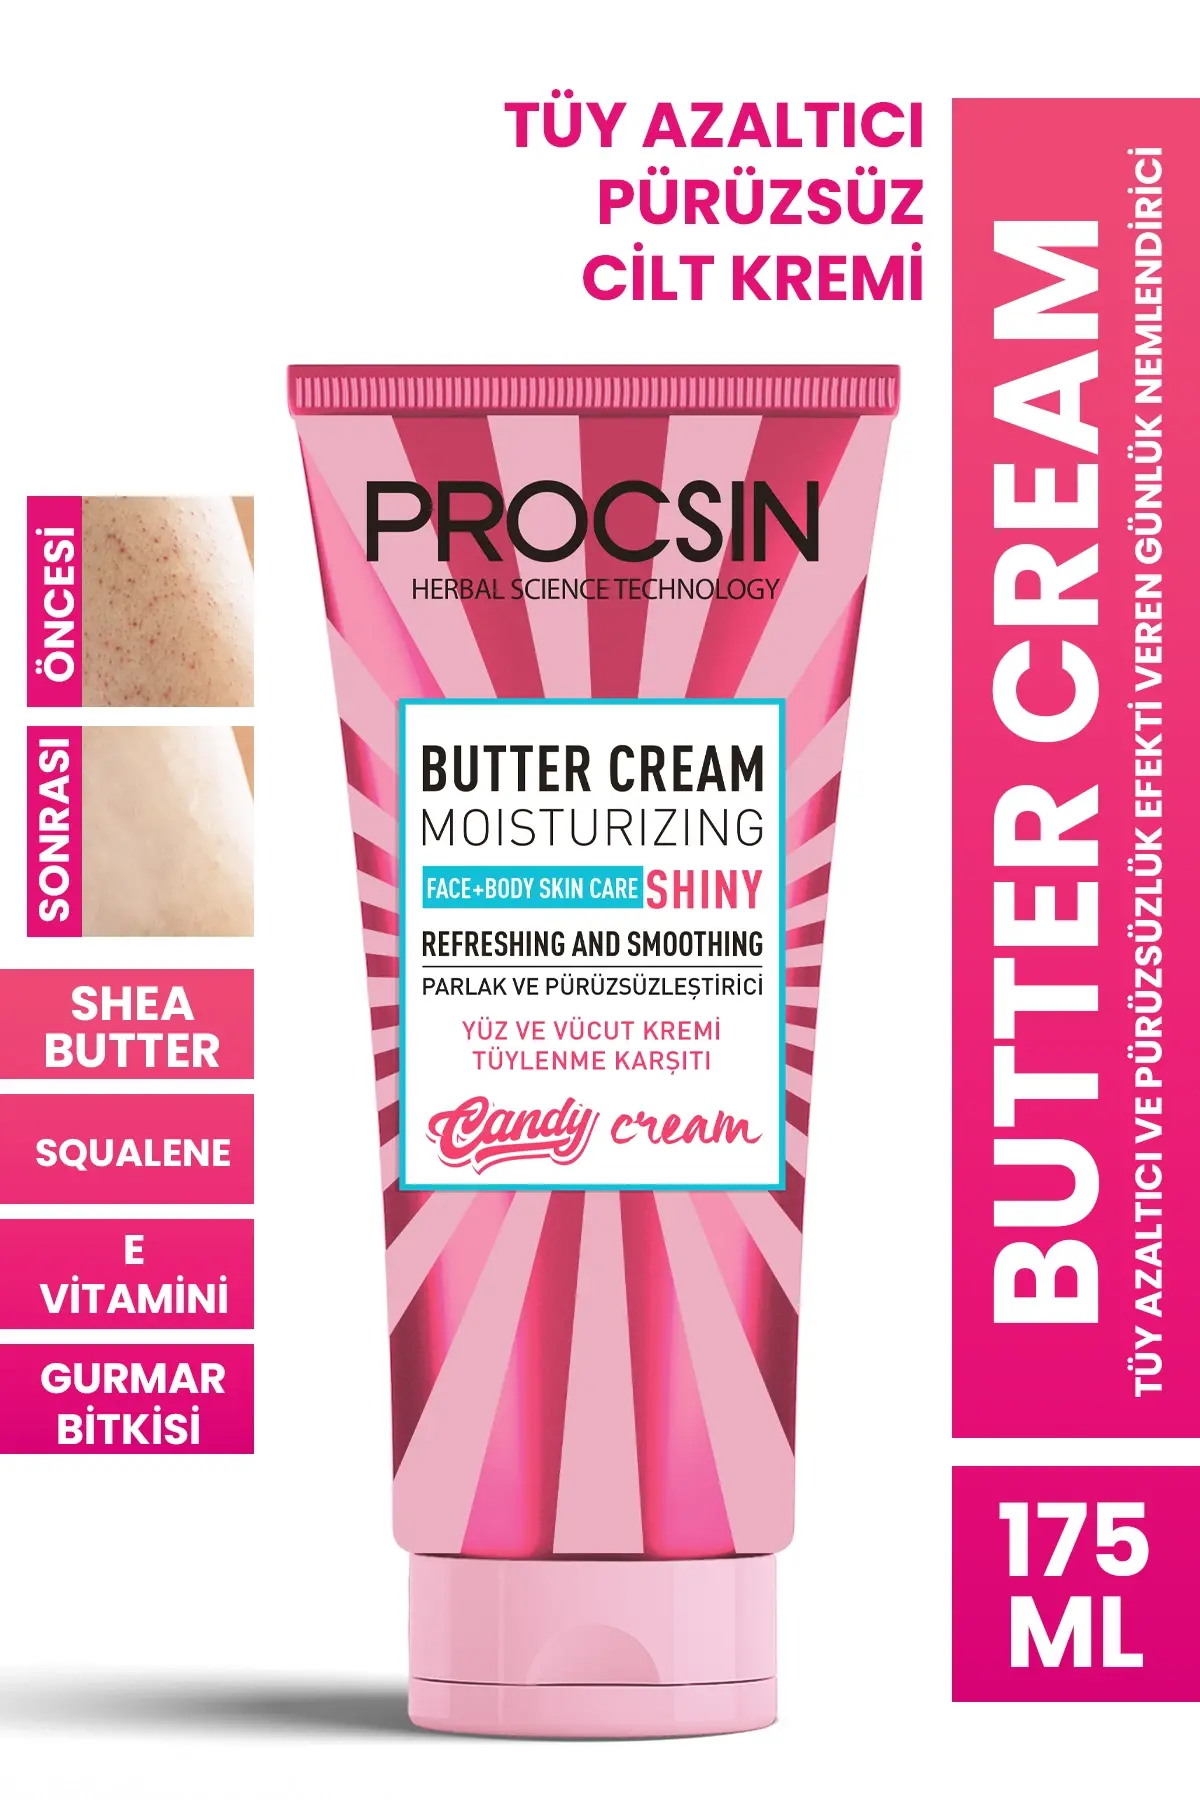 PROCSIN Butter Cream Tüy Azaltıcı ve Pürüzsüzlük Efekti Veren Günlük Nemlendirici 175 ML - 1